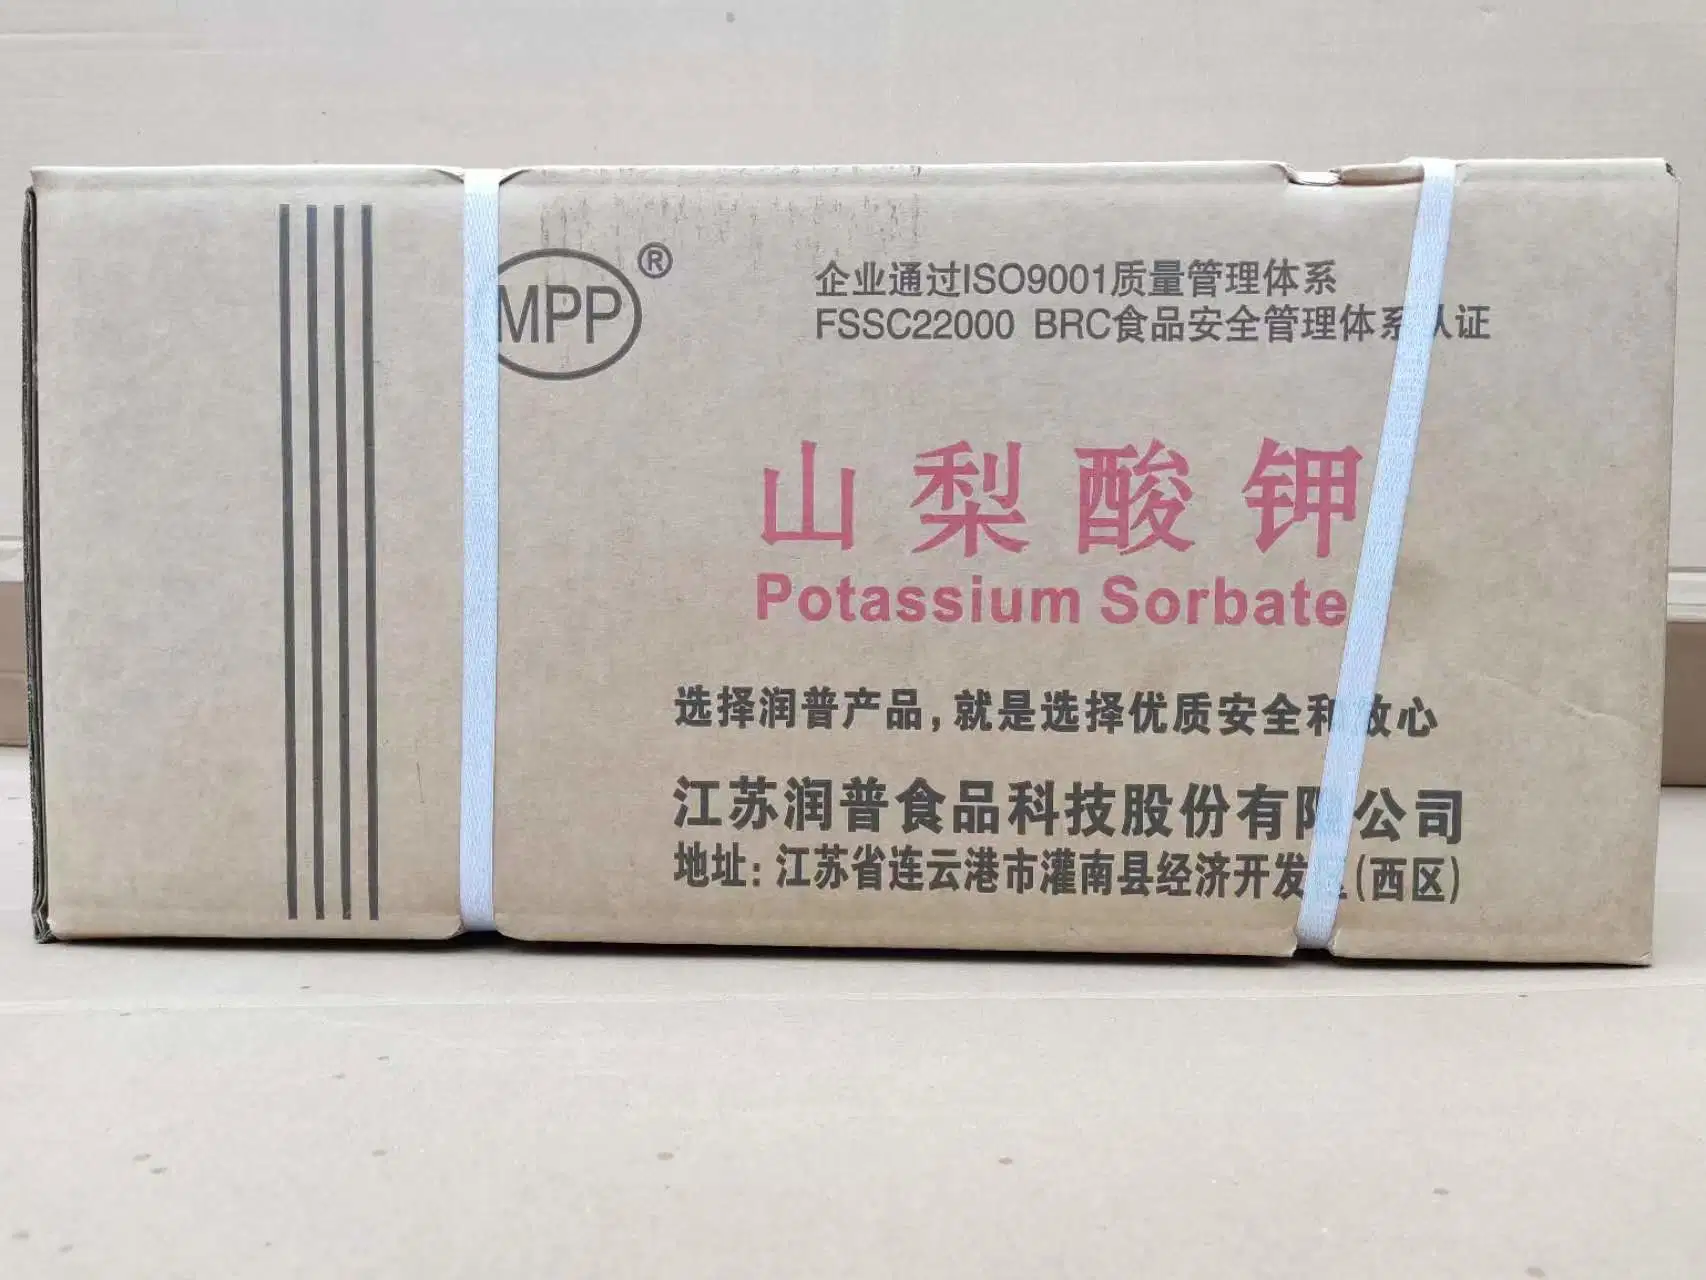 مصنع إمداد مسحوق الحبوب البوتاسيوم Sorbate للأغذية والمشروبات